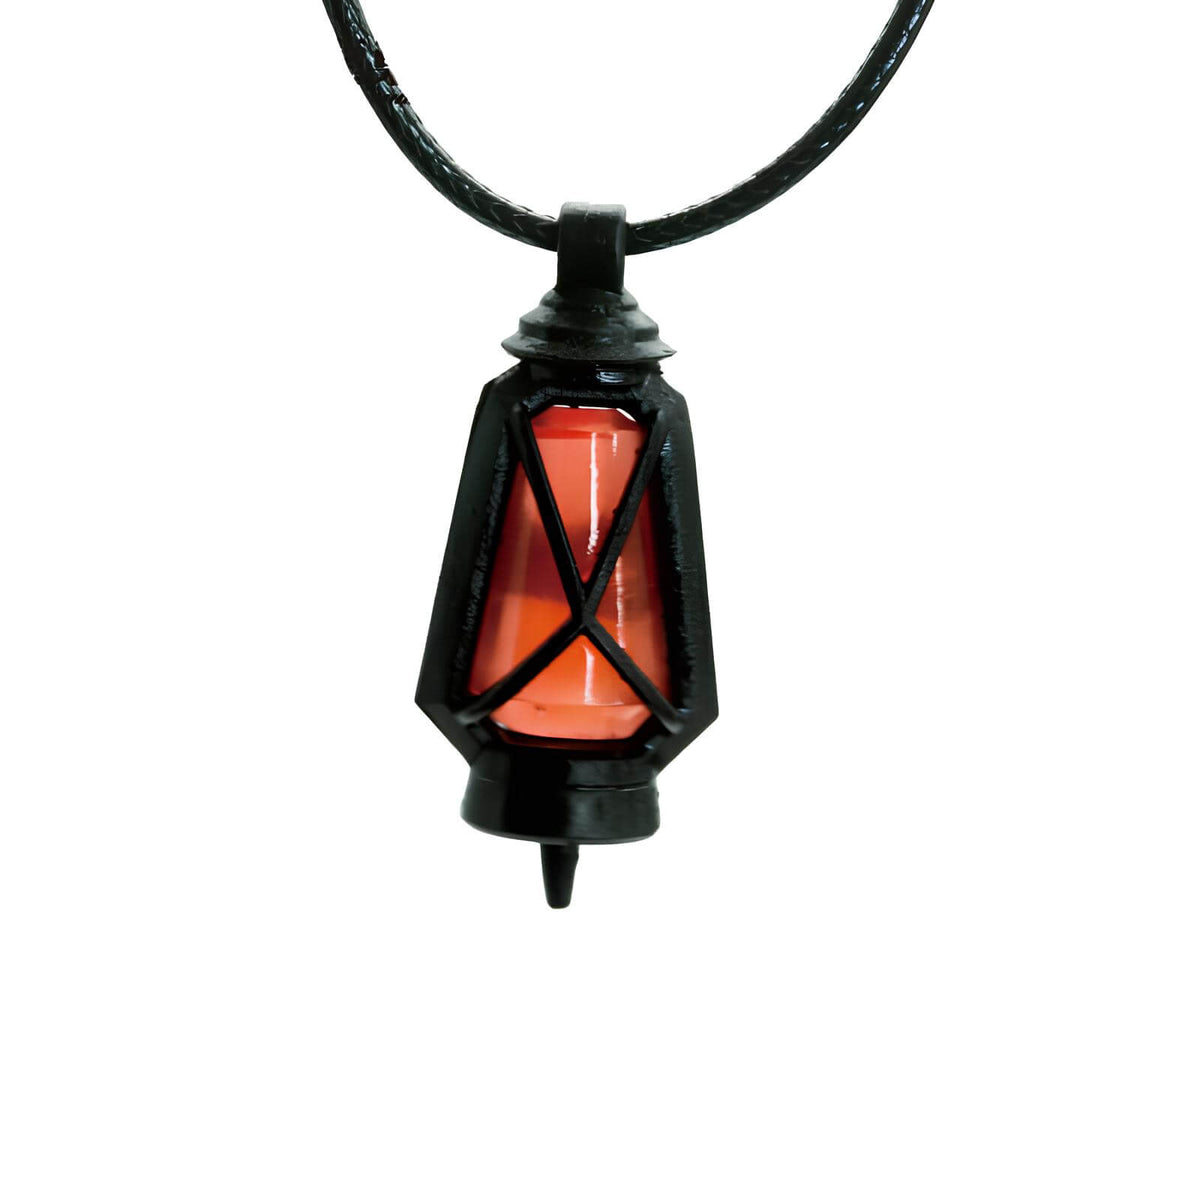 Arknights Irene lantern necklace